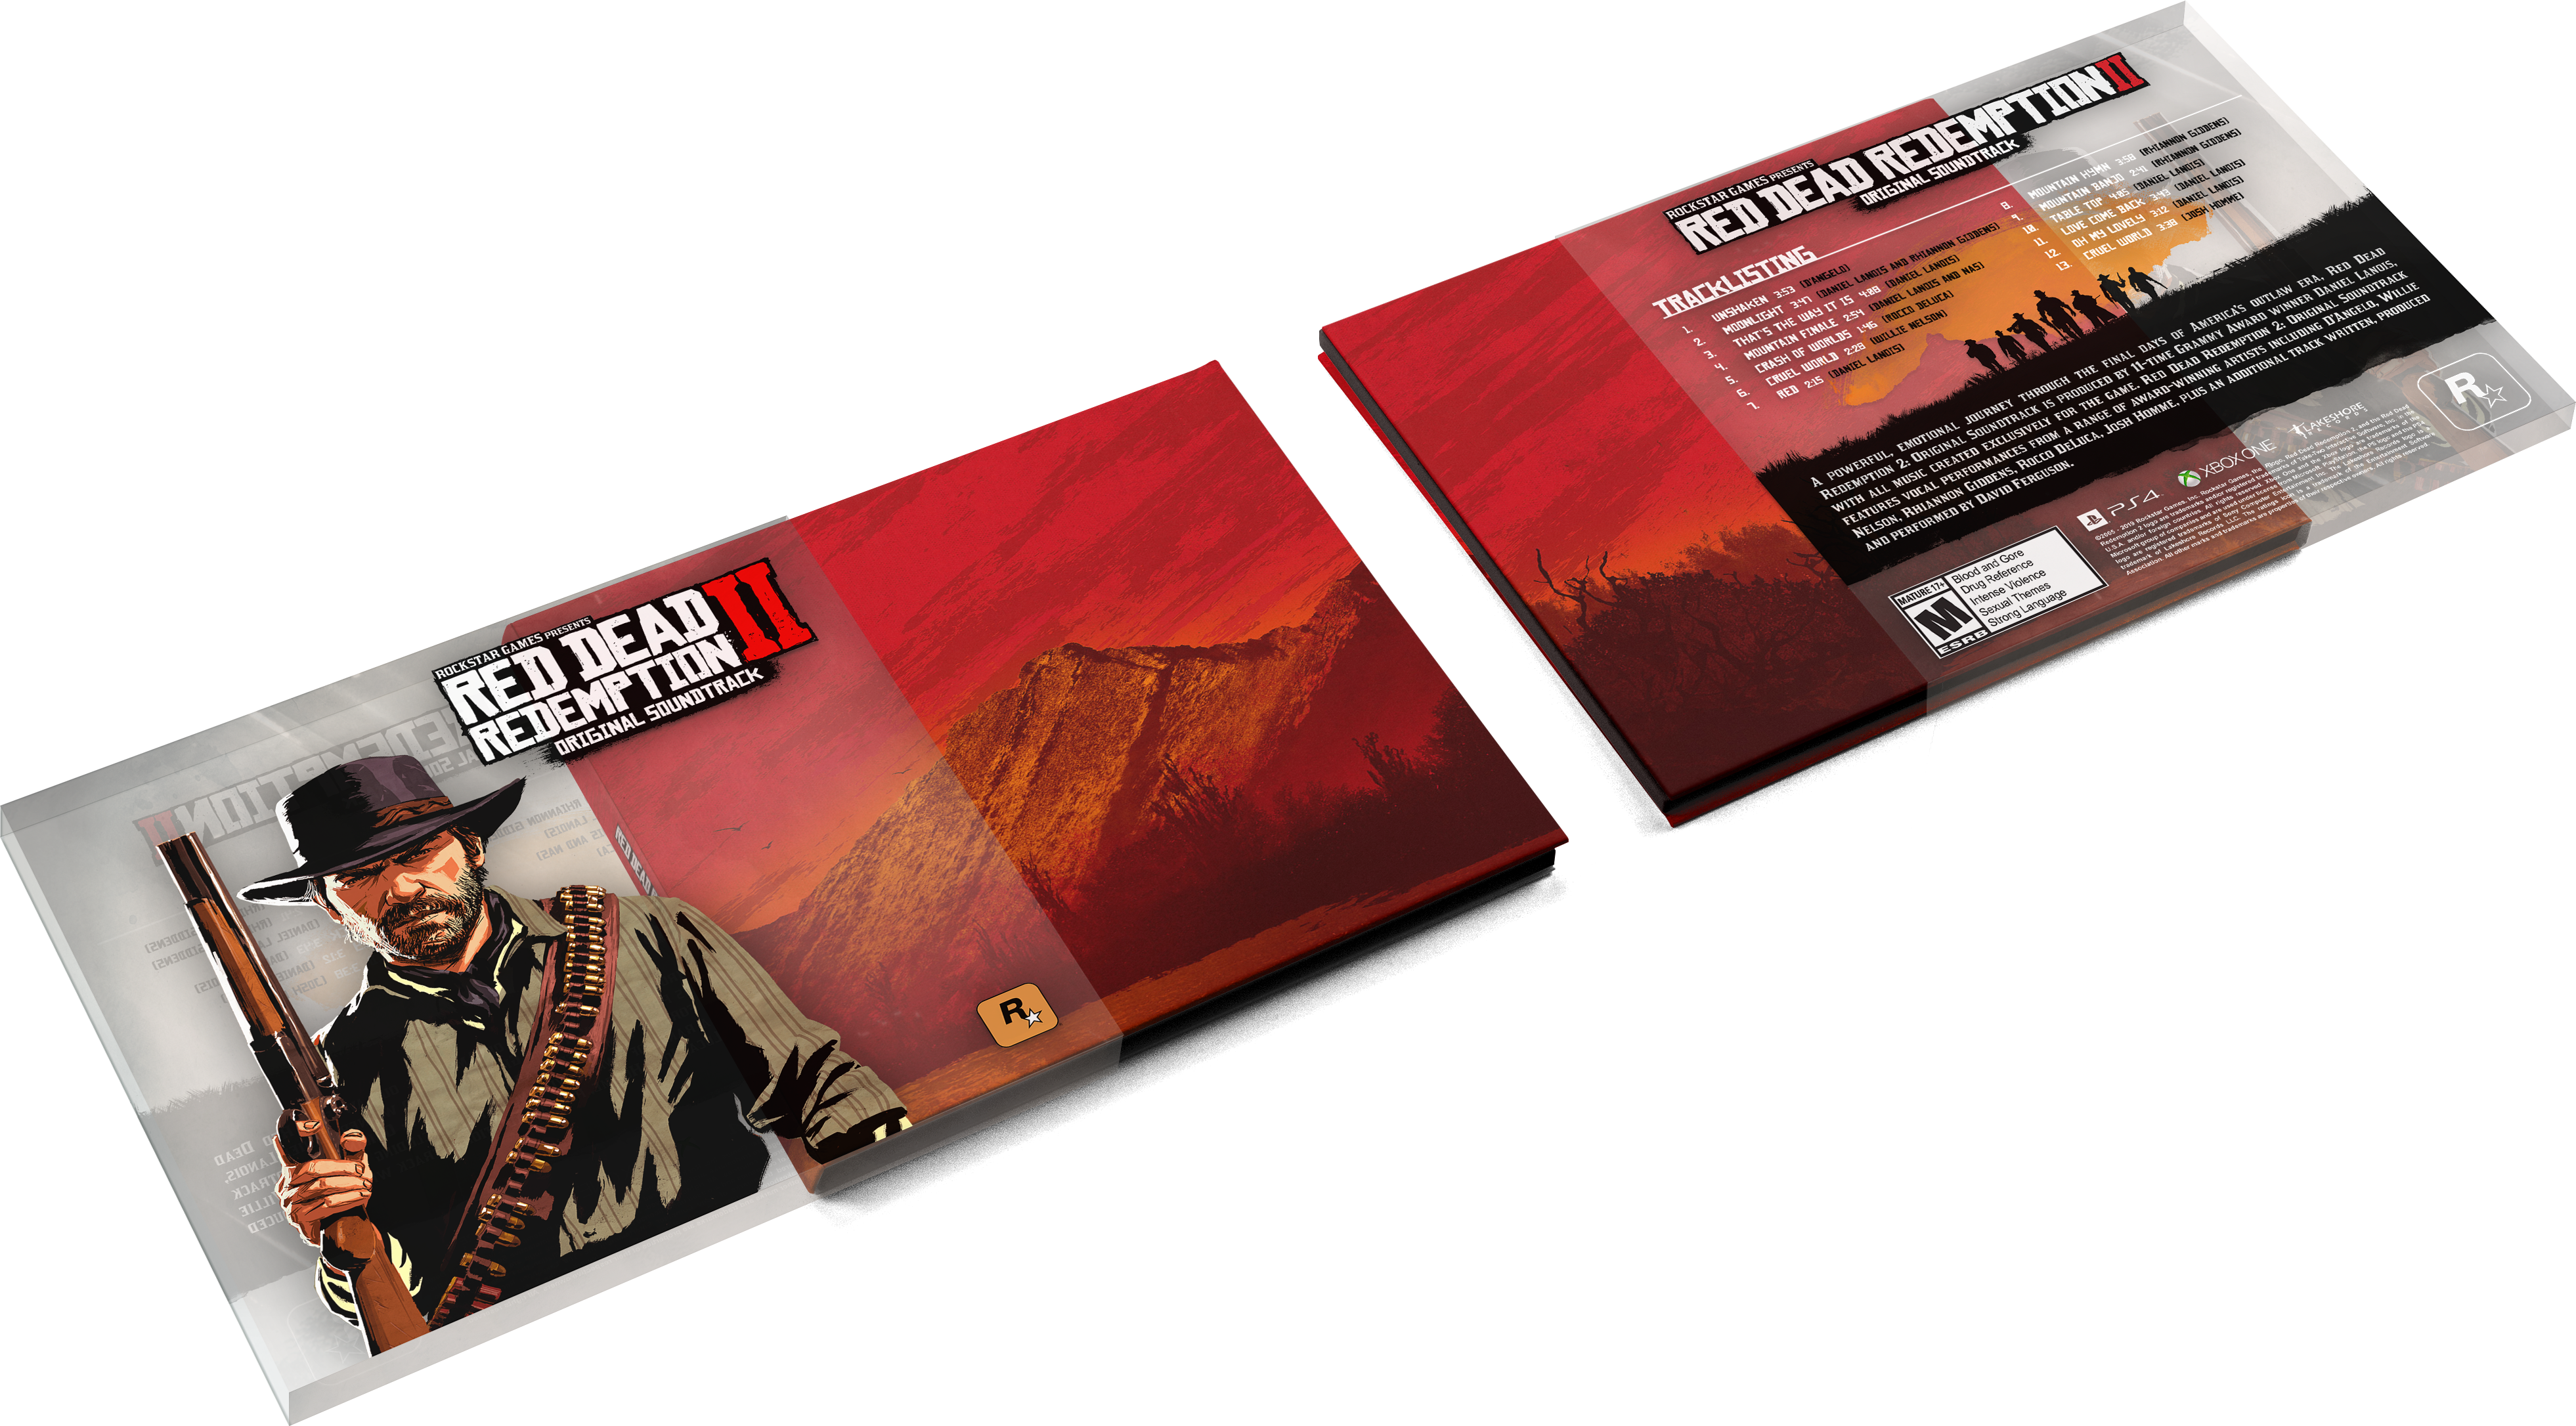 Red Redemption 2 Original Soundtrack anakin022 DeviantArt